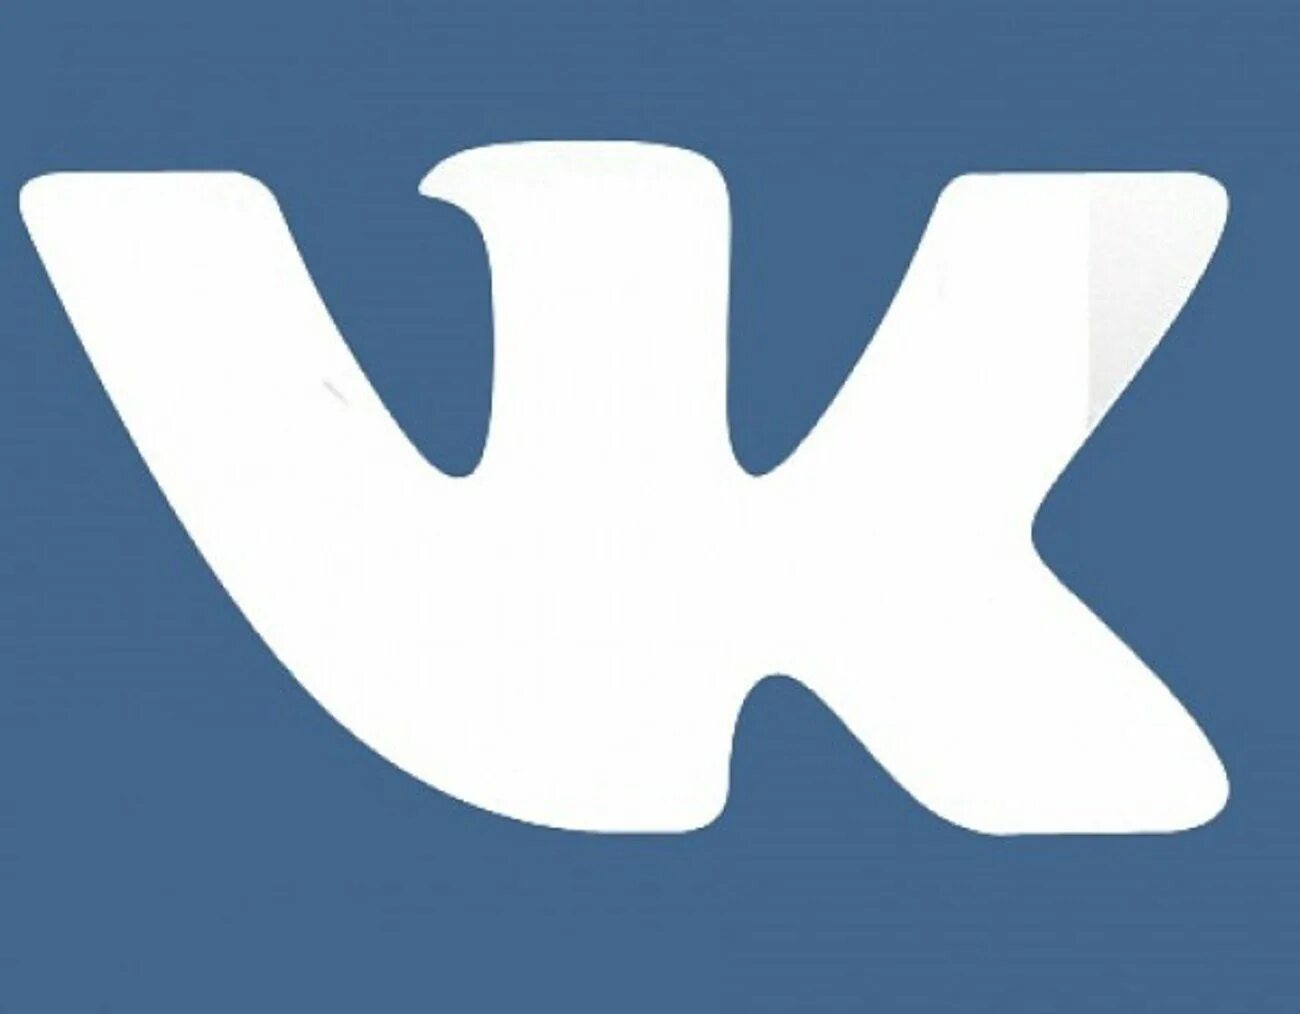 Vk com ozerskvibiraetkomfort. Логотип ВК. Значок ВК черный. Иконка ВК 2022. Иконка ВК без фона.